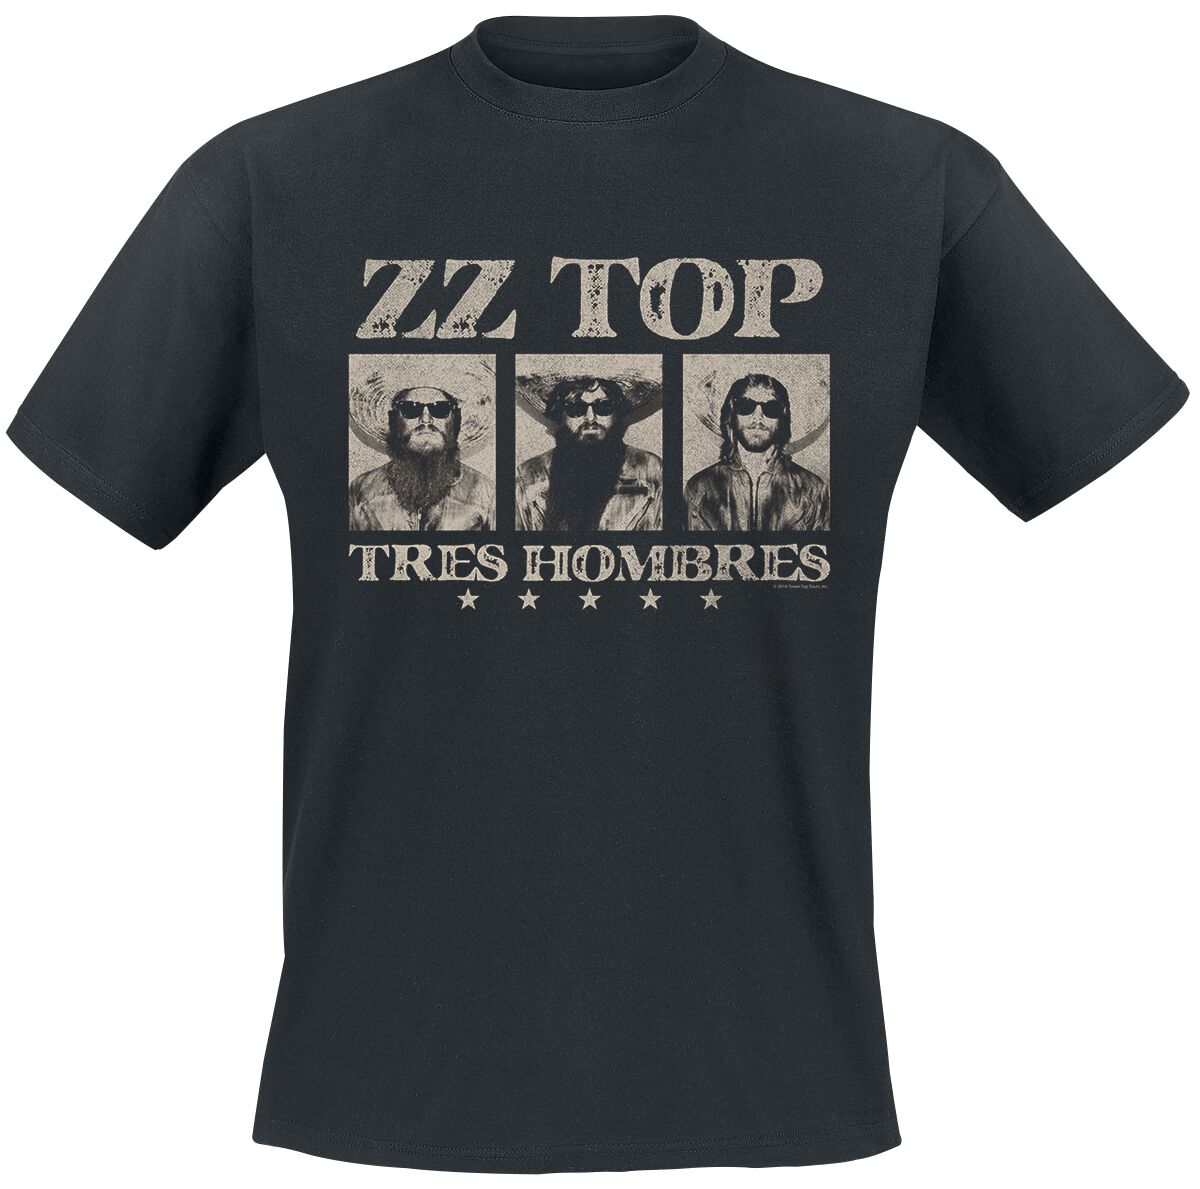 ZZ Top Tres hombres T-Shirt schwarz in M